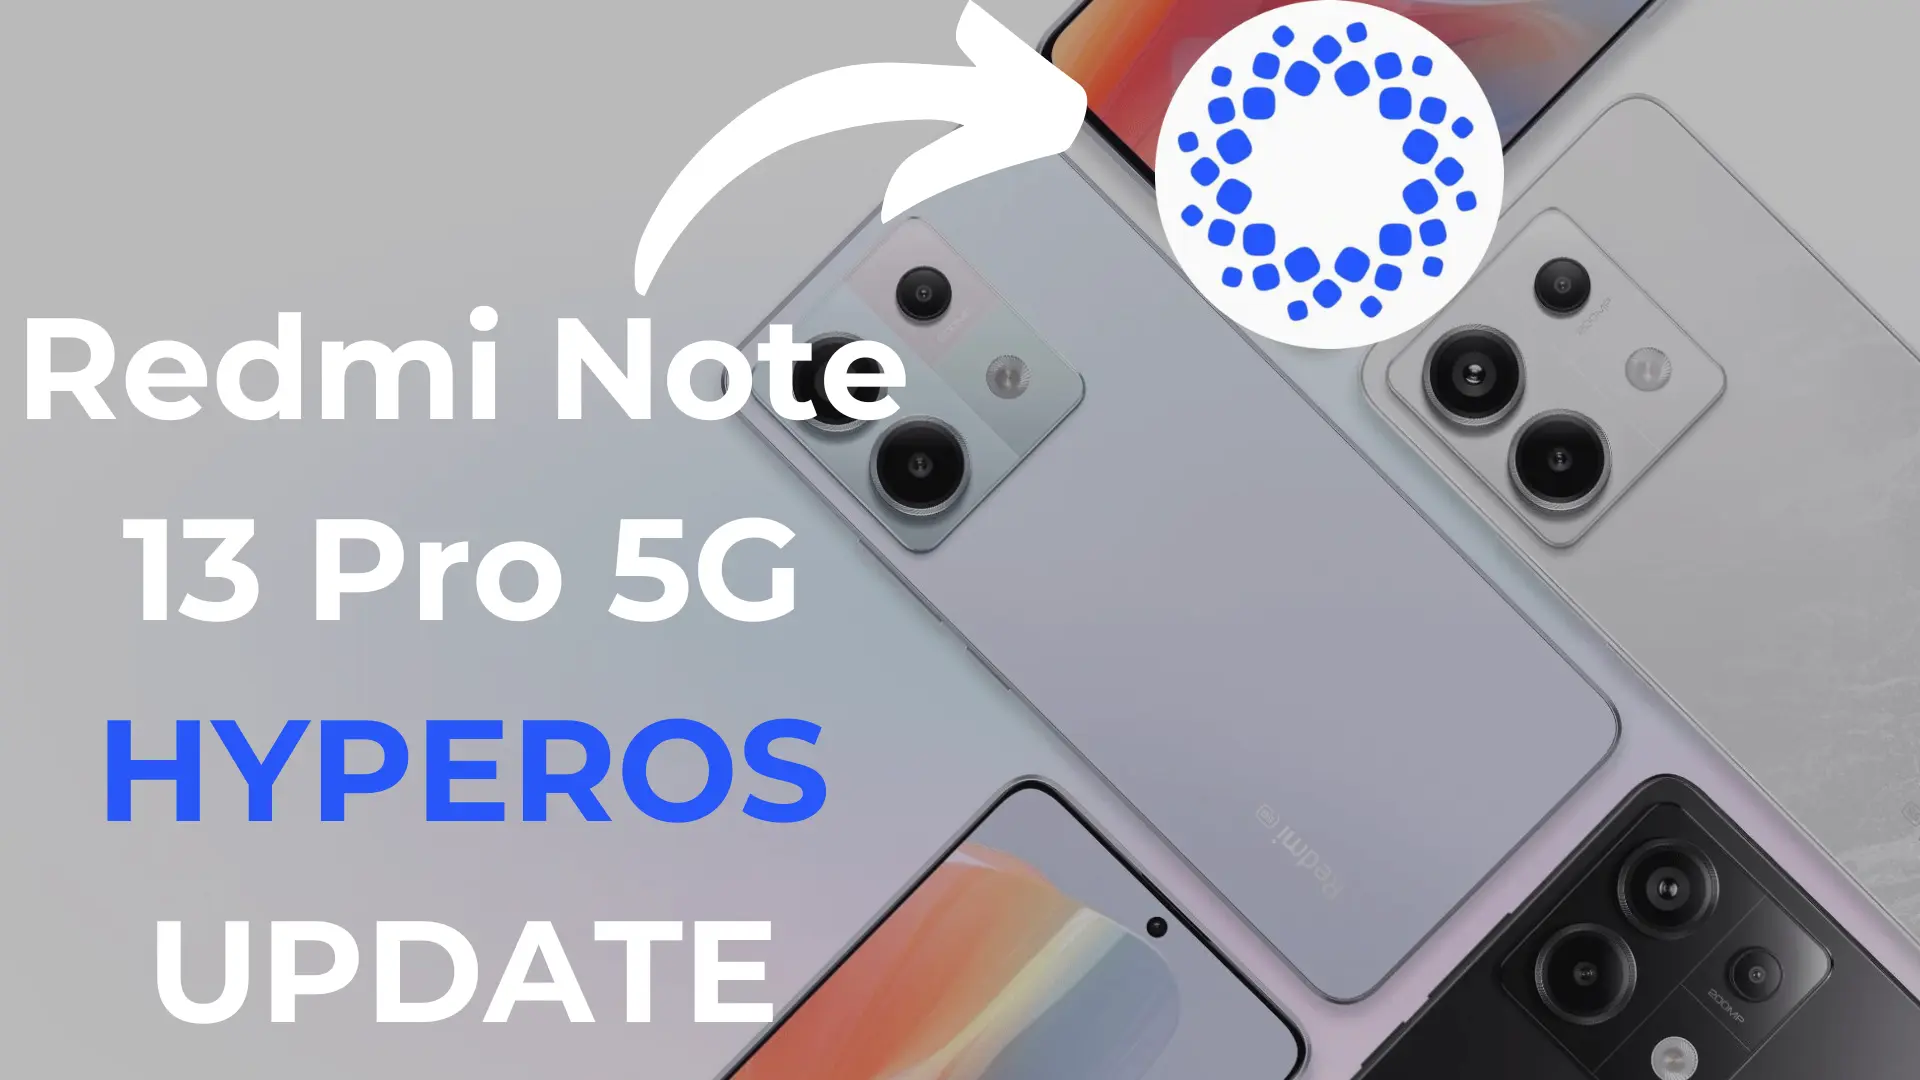 Redmi Note 13 Pro 5G HYPEROS UPDATE